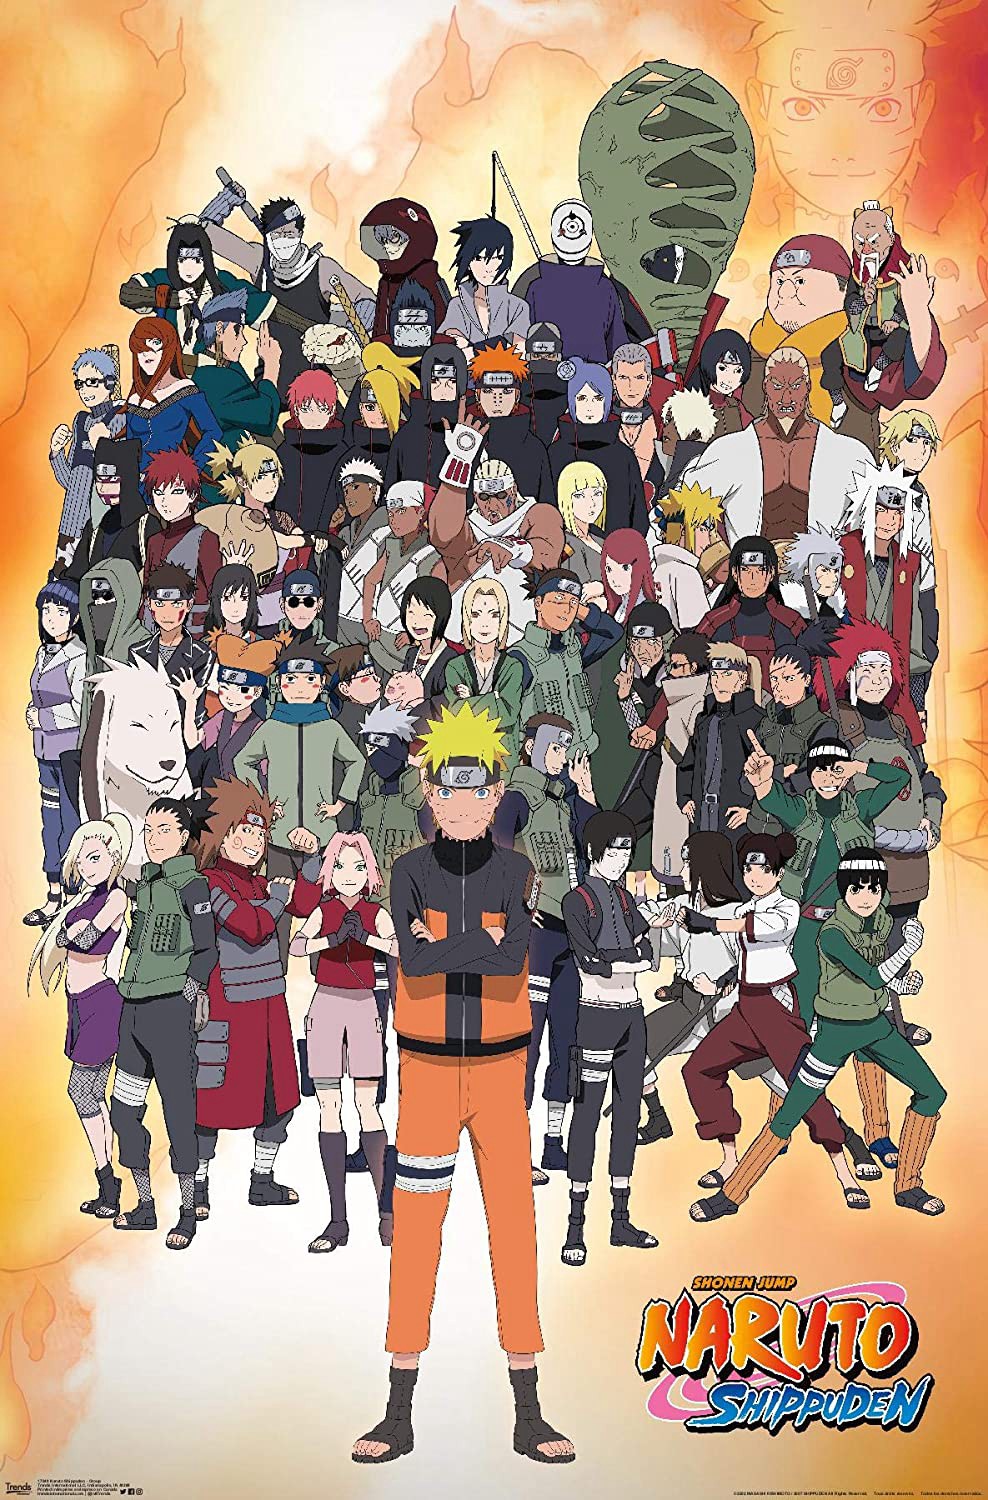 Naruto Shippuden (Naruto Shippuuden) [2007]